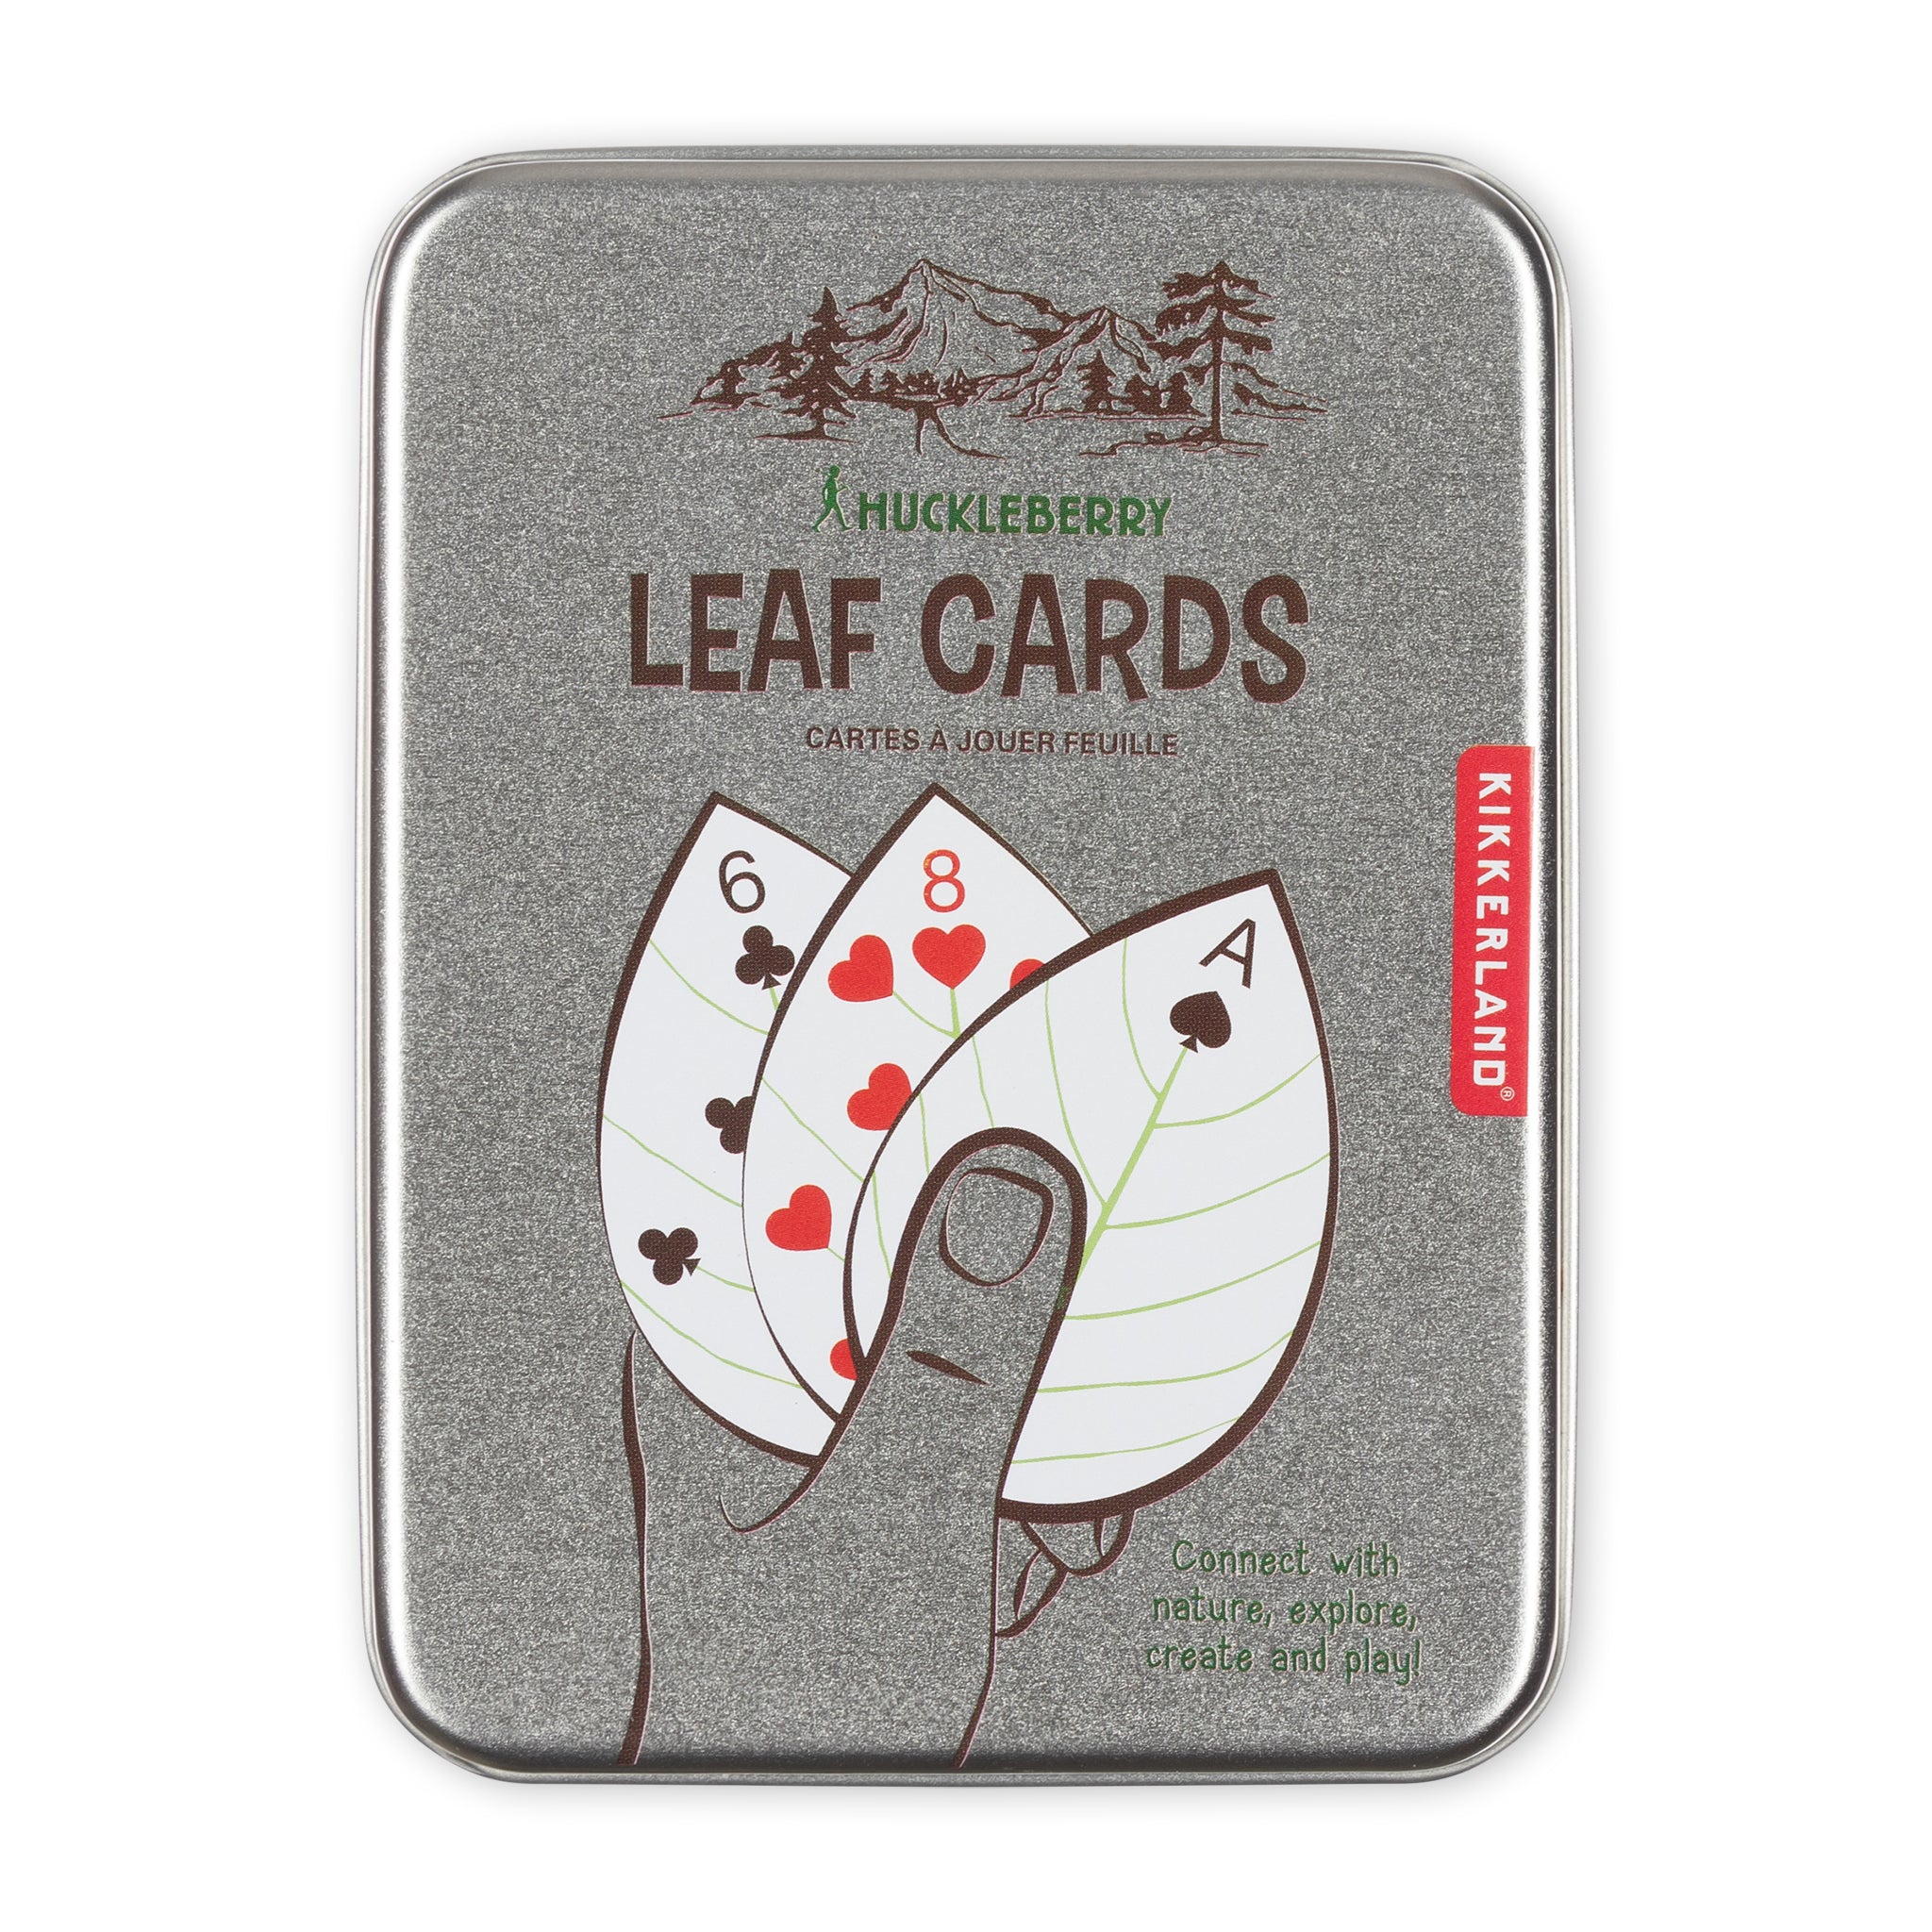 Kikkerland Huckleberry Leaf Cards